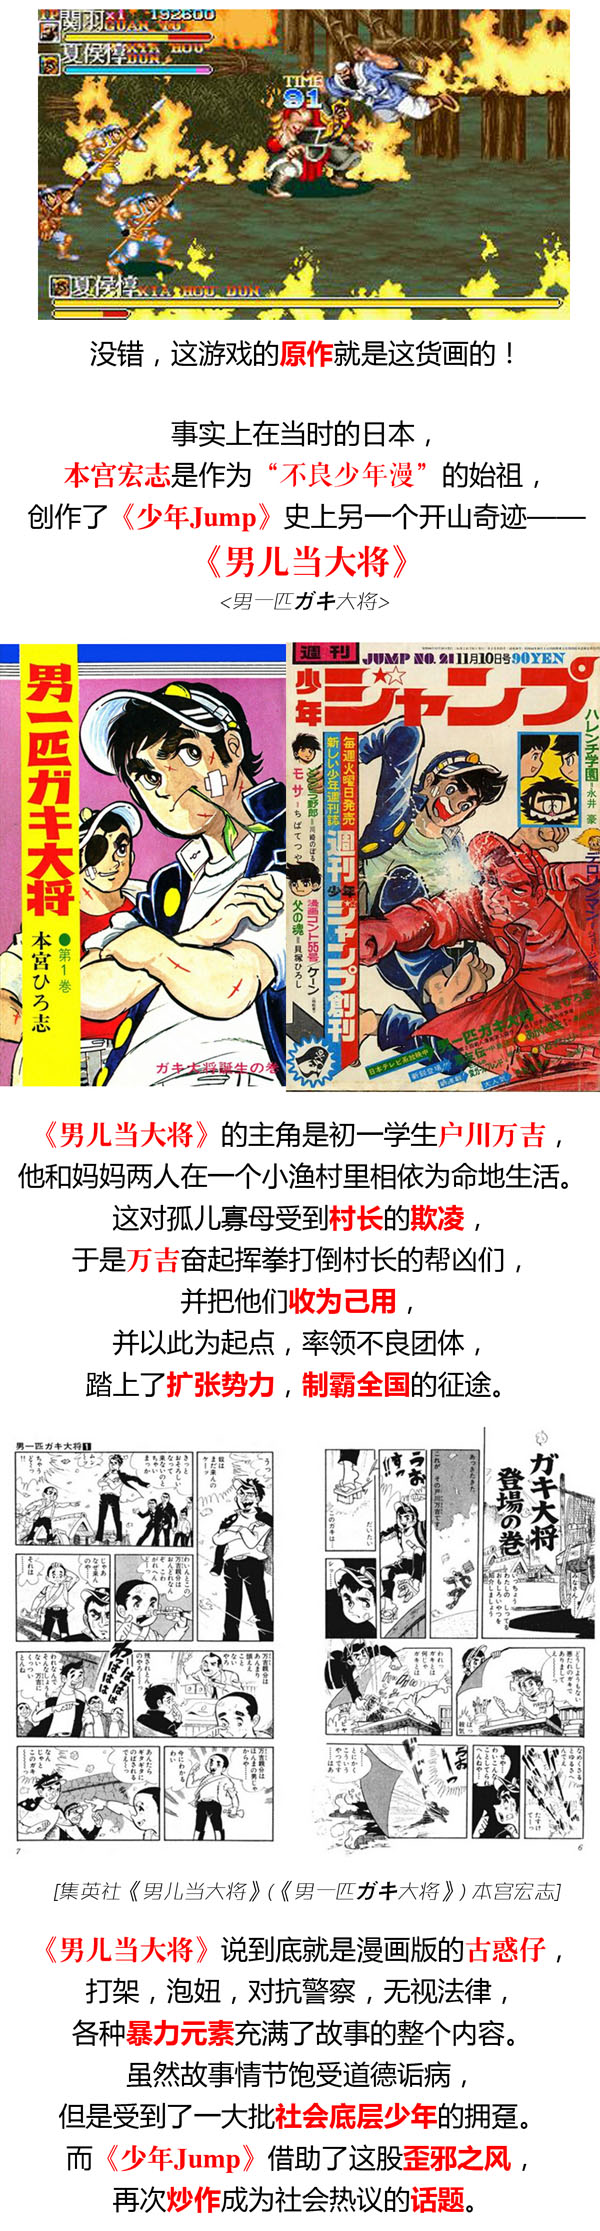 你不知道漫画界的事—《少年JUMP》日本漫画王国的建国秘笈